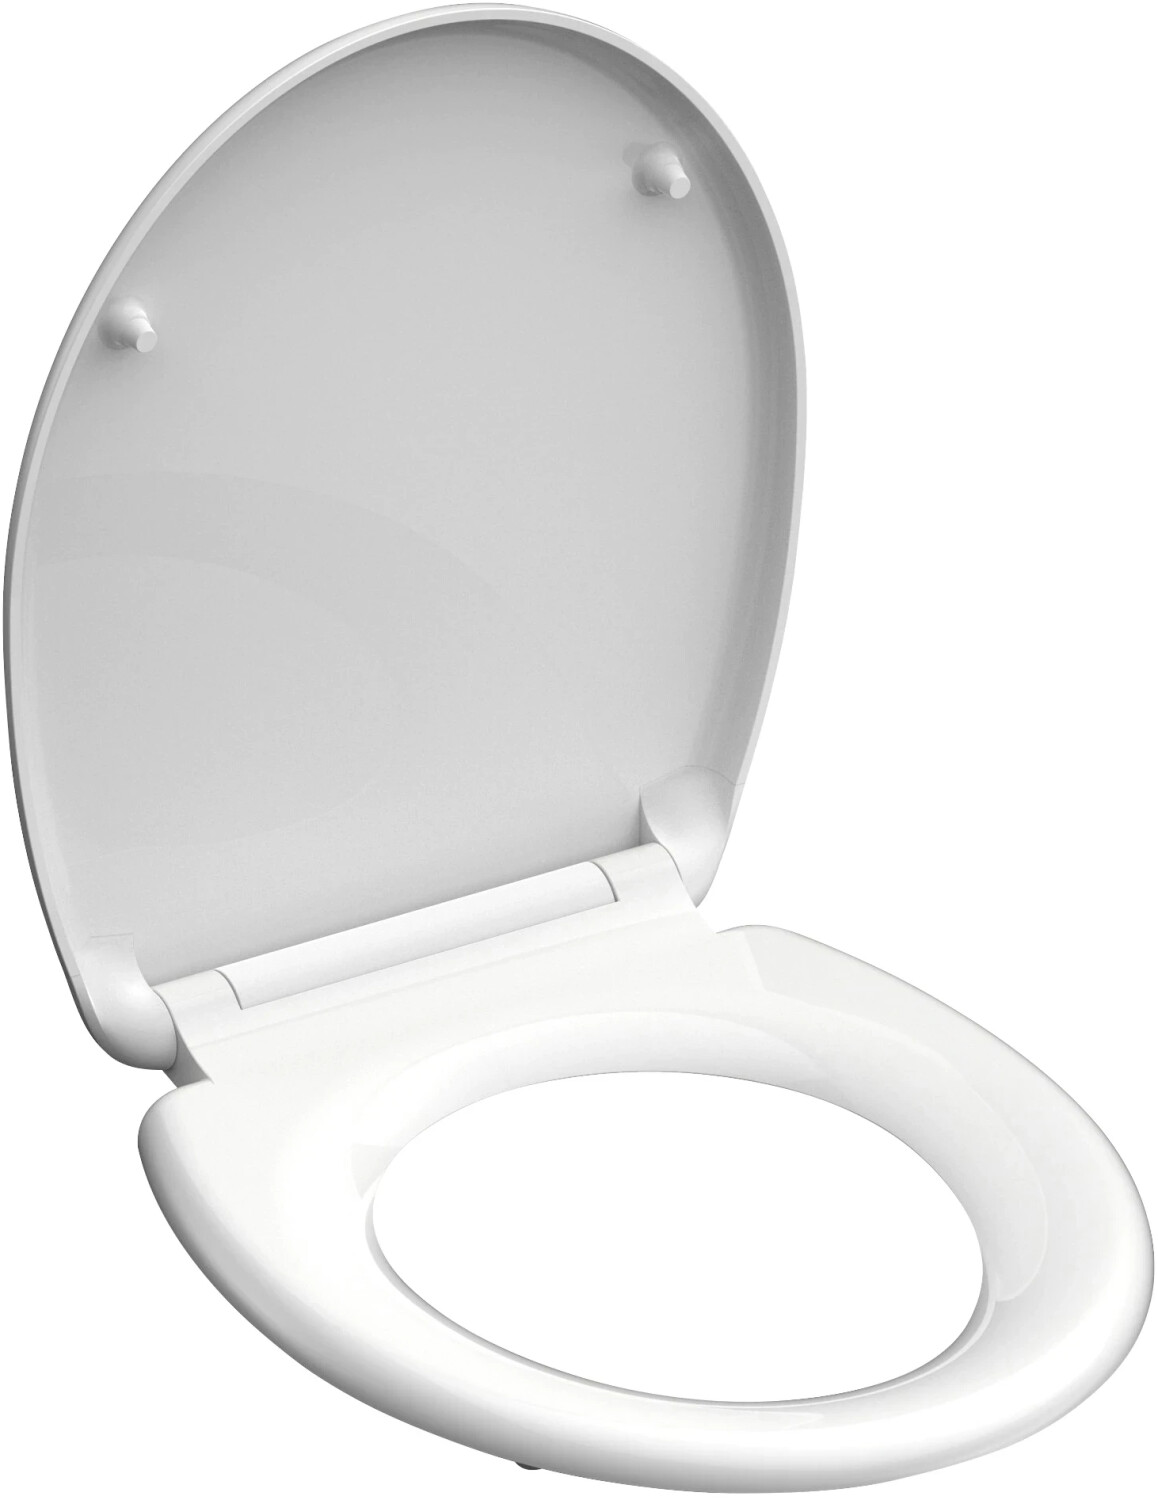 Schütte WC-Sitz Duroplast mit Absenkautomatik 37,4 x 45,3 cm weiß ab 18,00  € | Preisvergleich bei